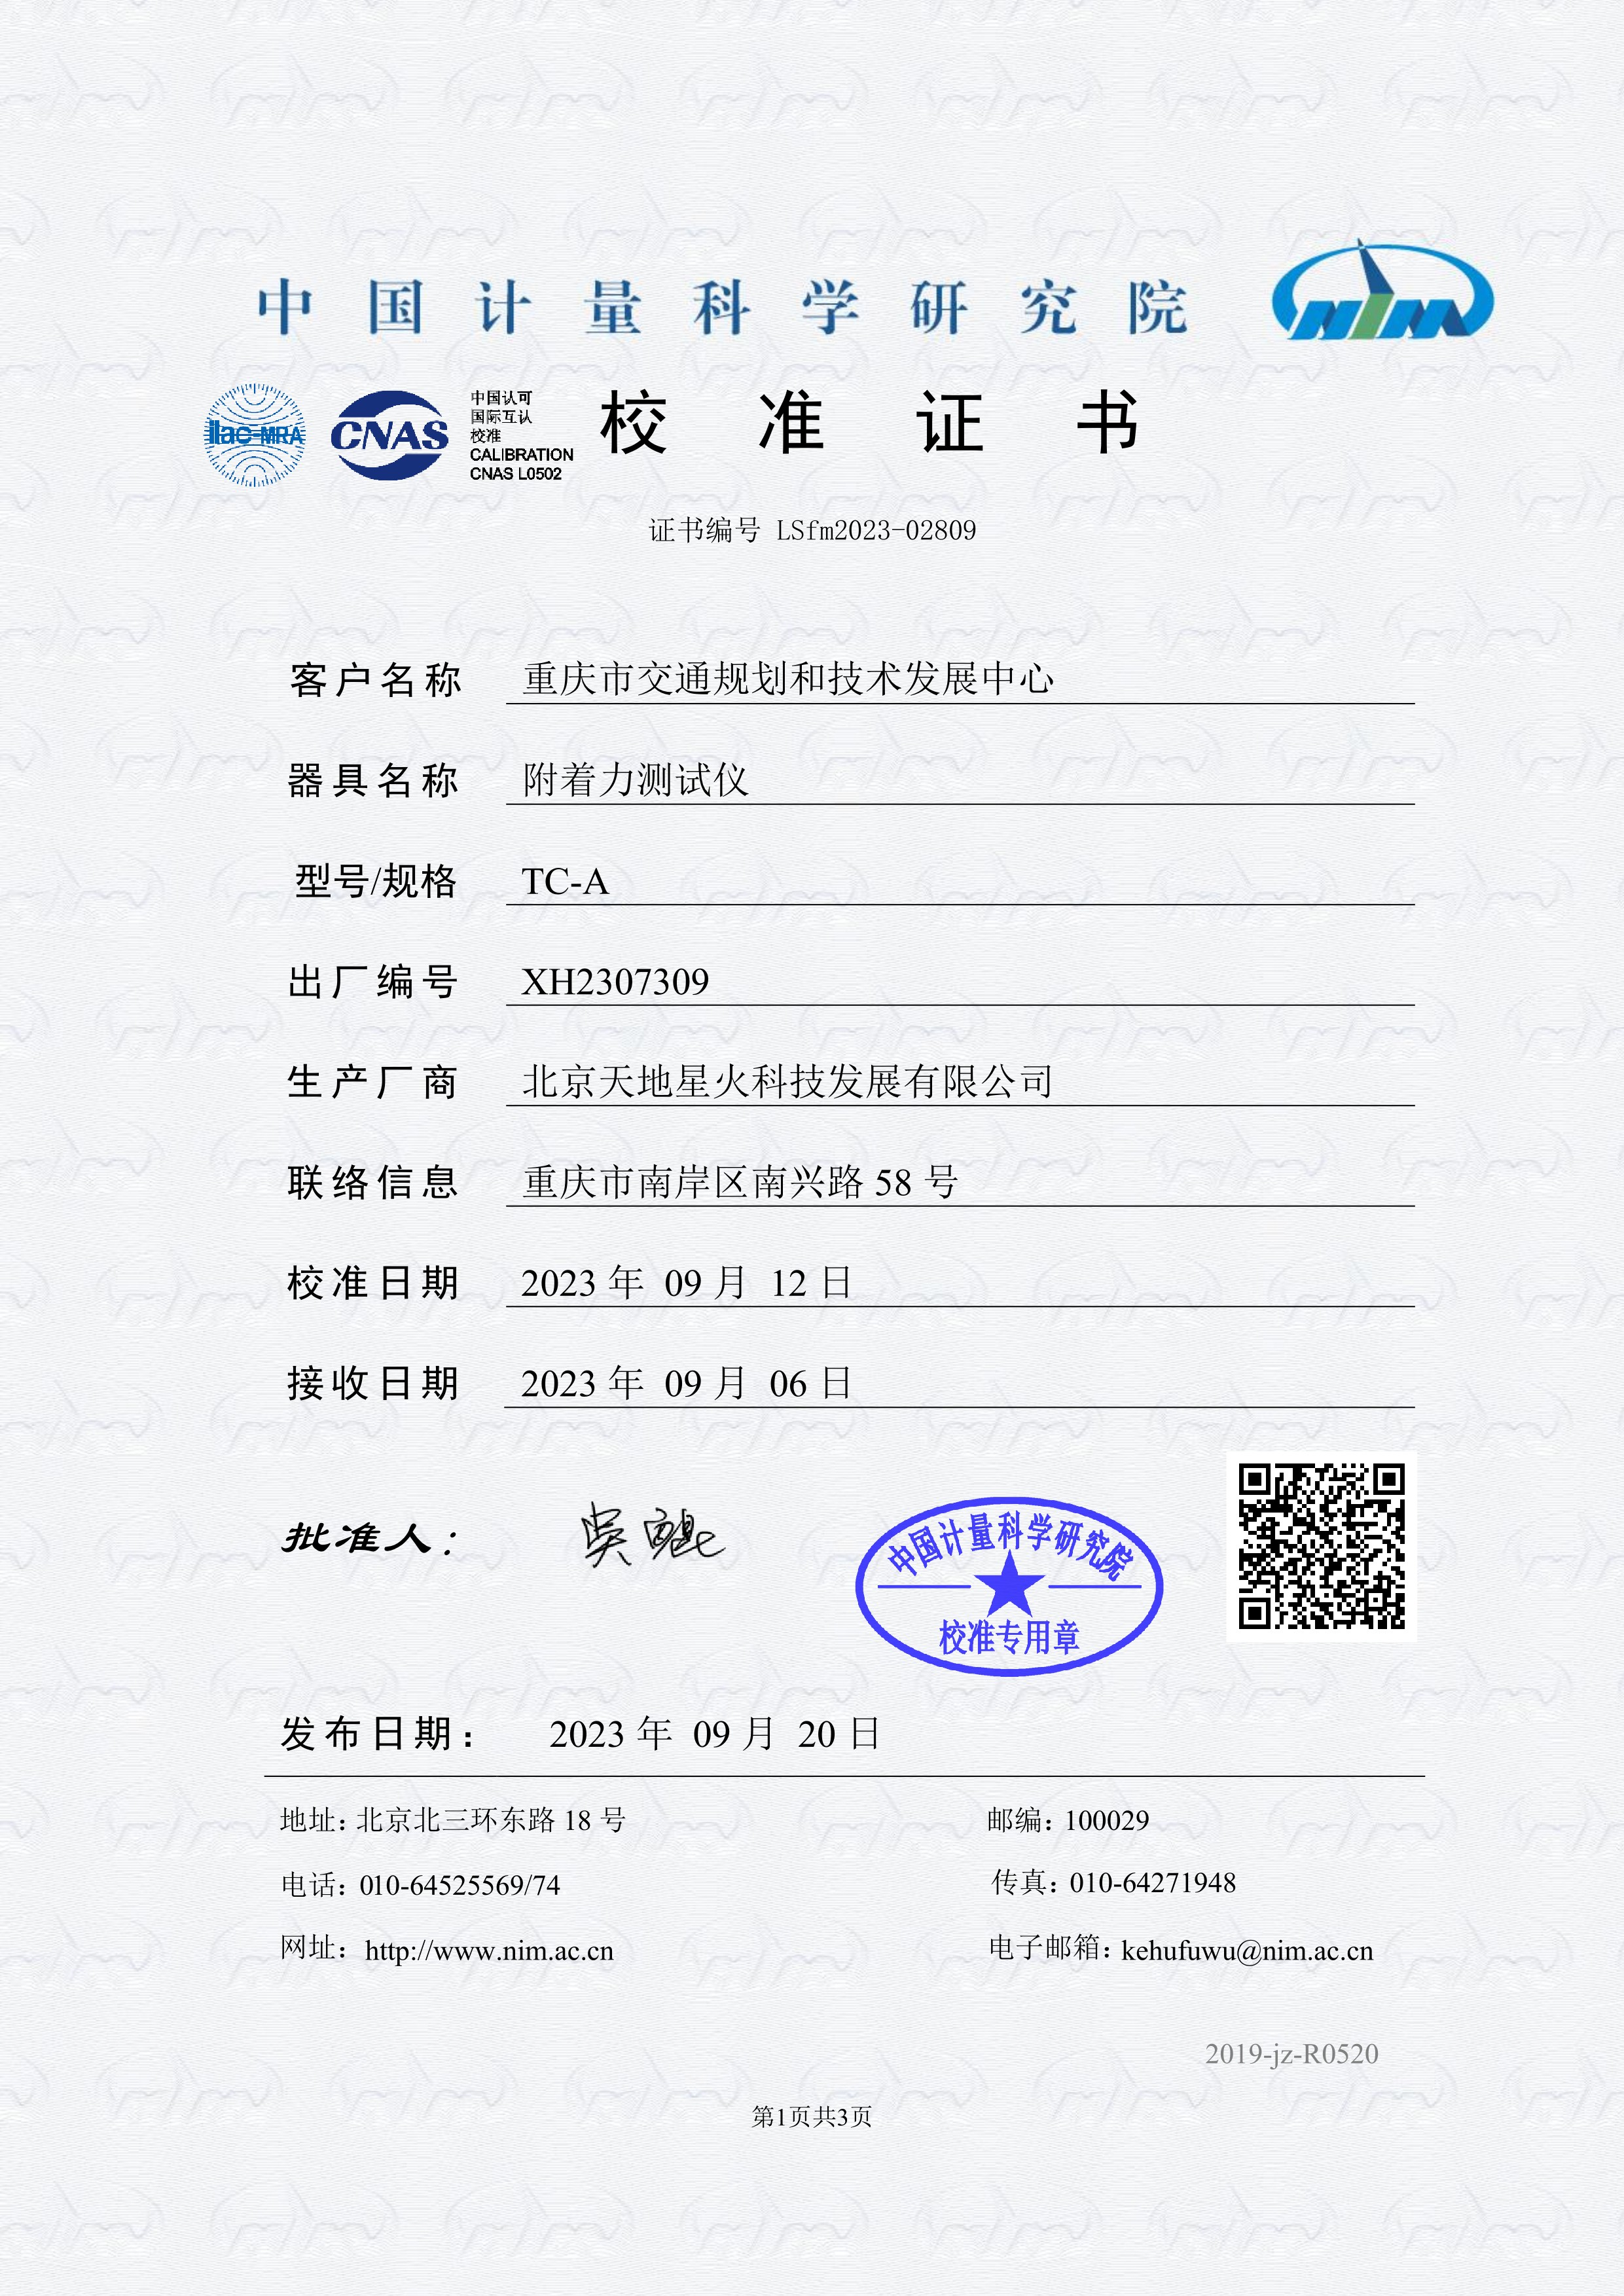 全自动附着力测试仪/自动附着力检测仪通过中国计量院计量检定(图1)